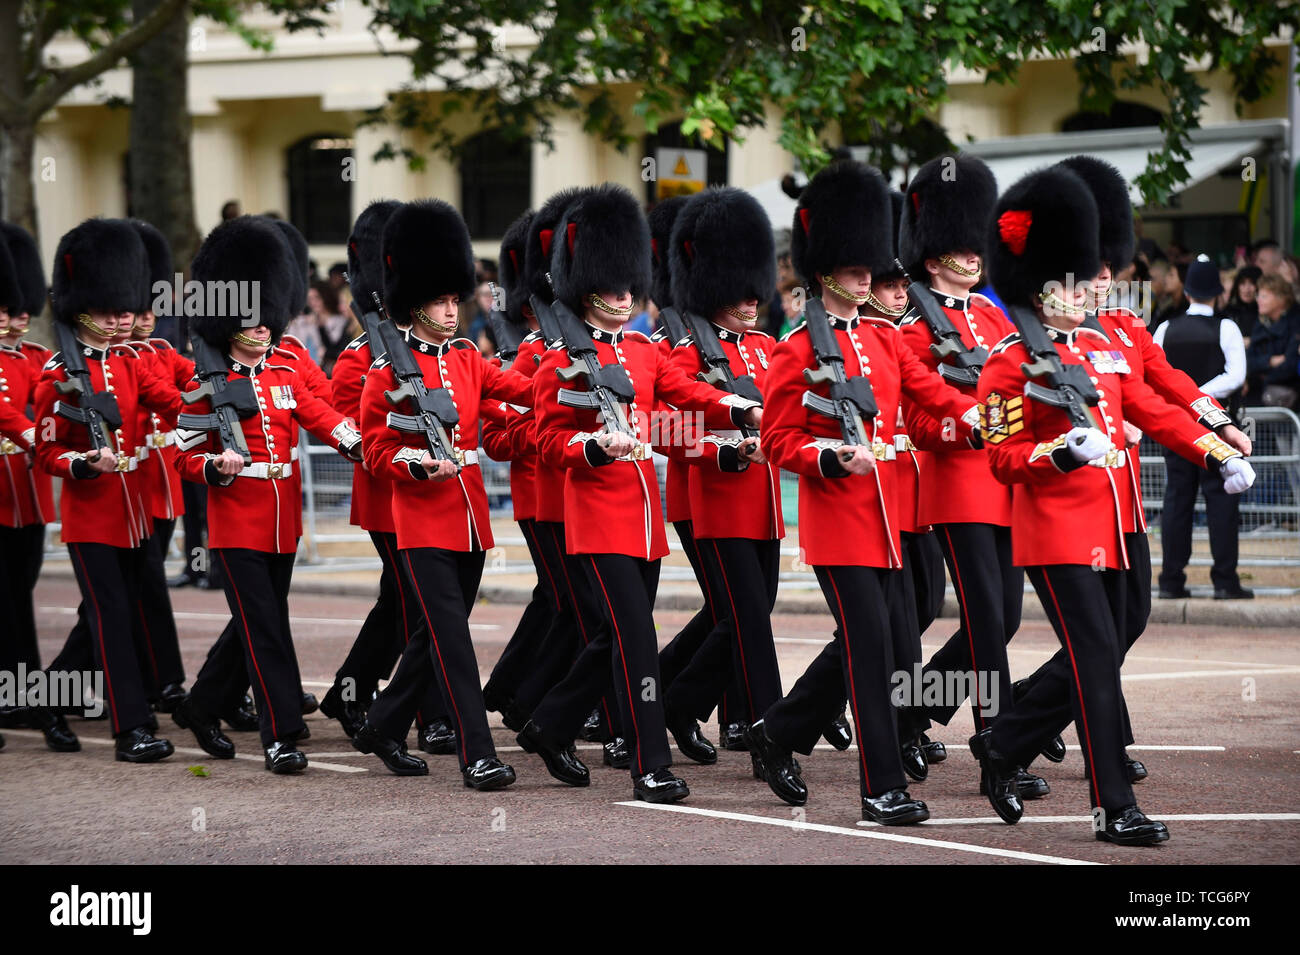 Londres, Royaume-Uni. 8 juin 2019. Les membres du 1er Bataillon Grenadier Guards passent au cours de la parade de la couleur sur le 93e anniversaire de la Reine. Crédit : Stephen Chung / Alamy Live News Banque D'Images